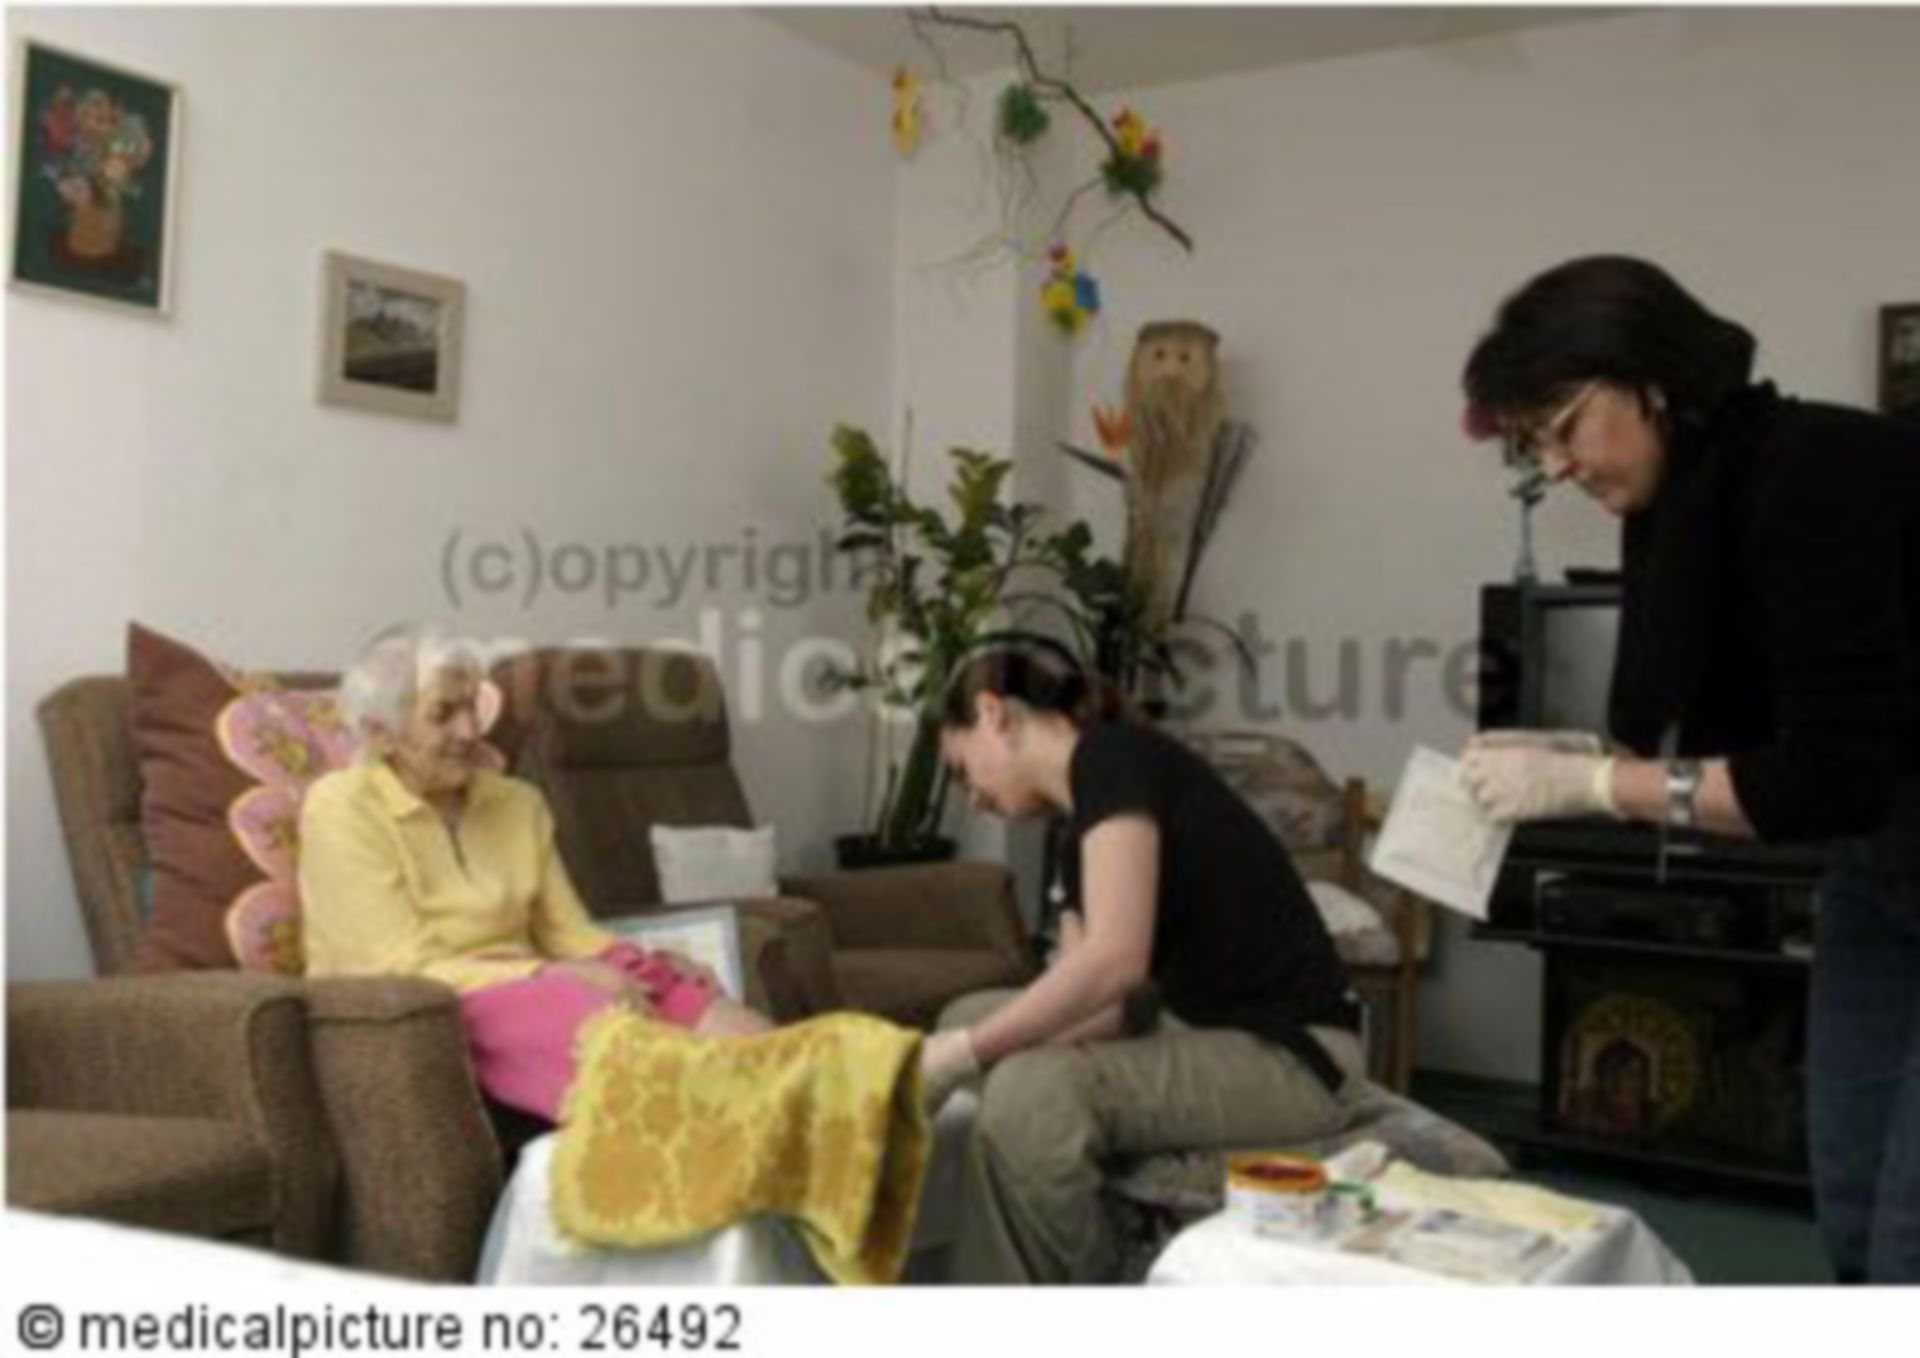 Altenpflege, elderly care